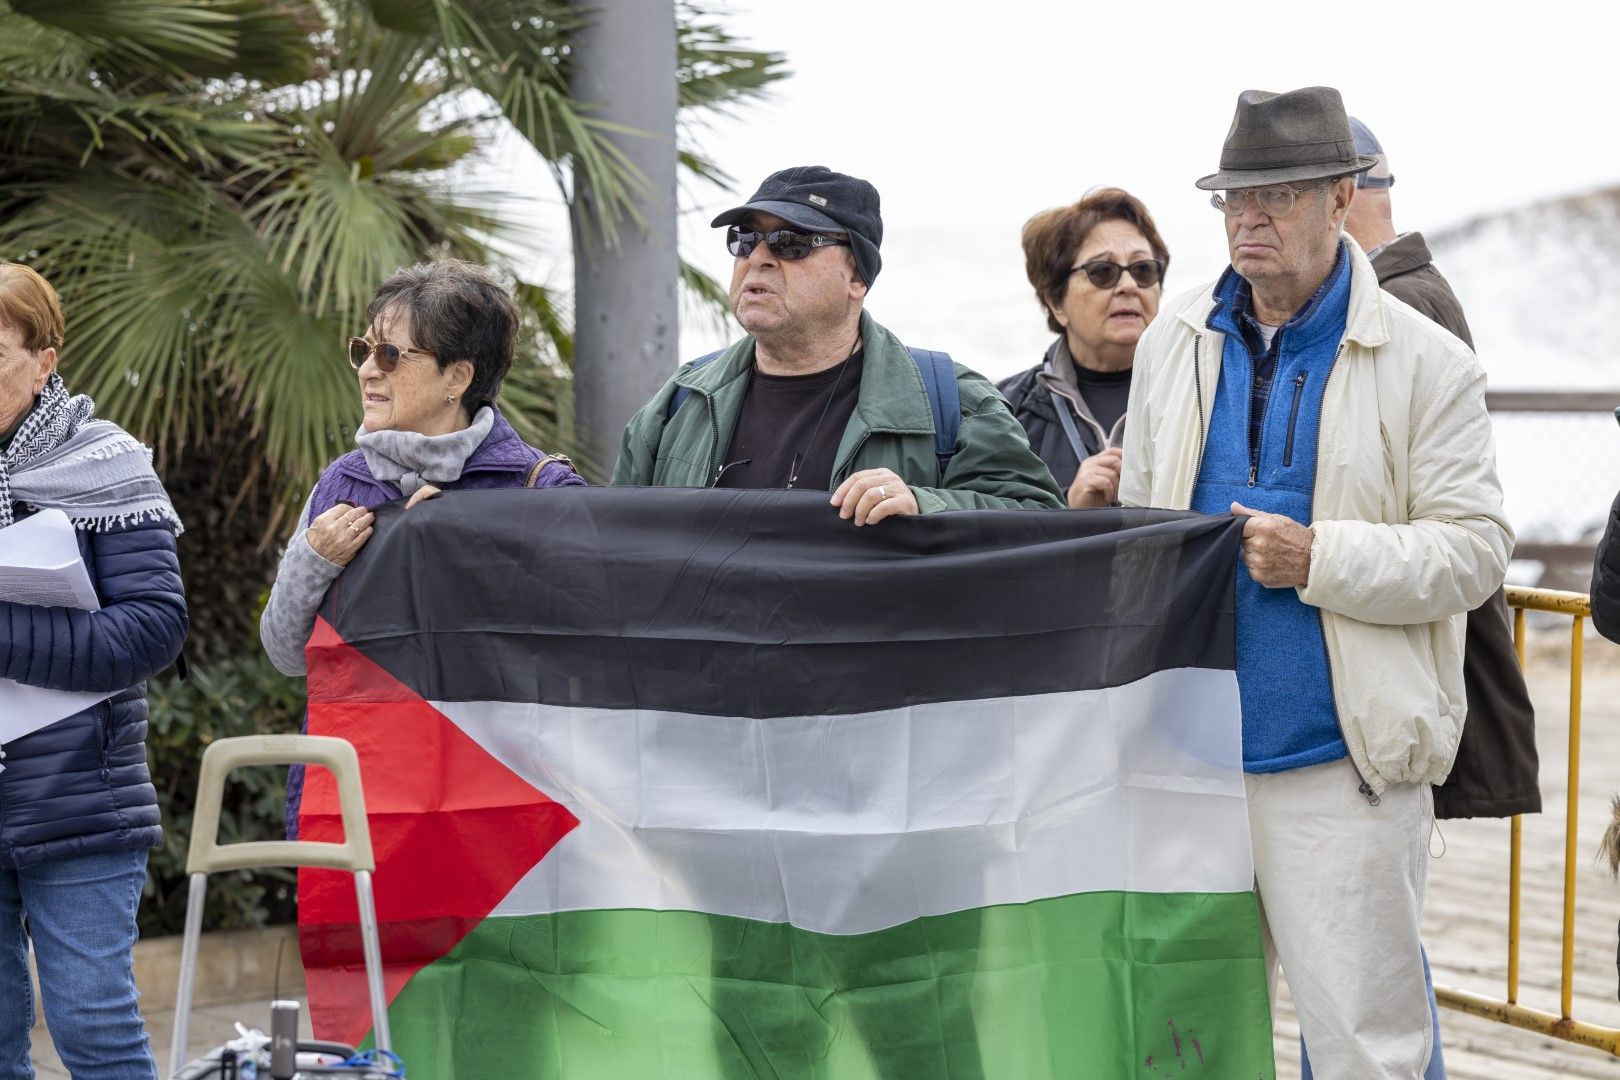 Una concentración en Torrevieja reclama "parar el genocidio en Gaza"